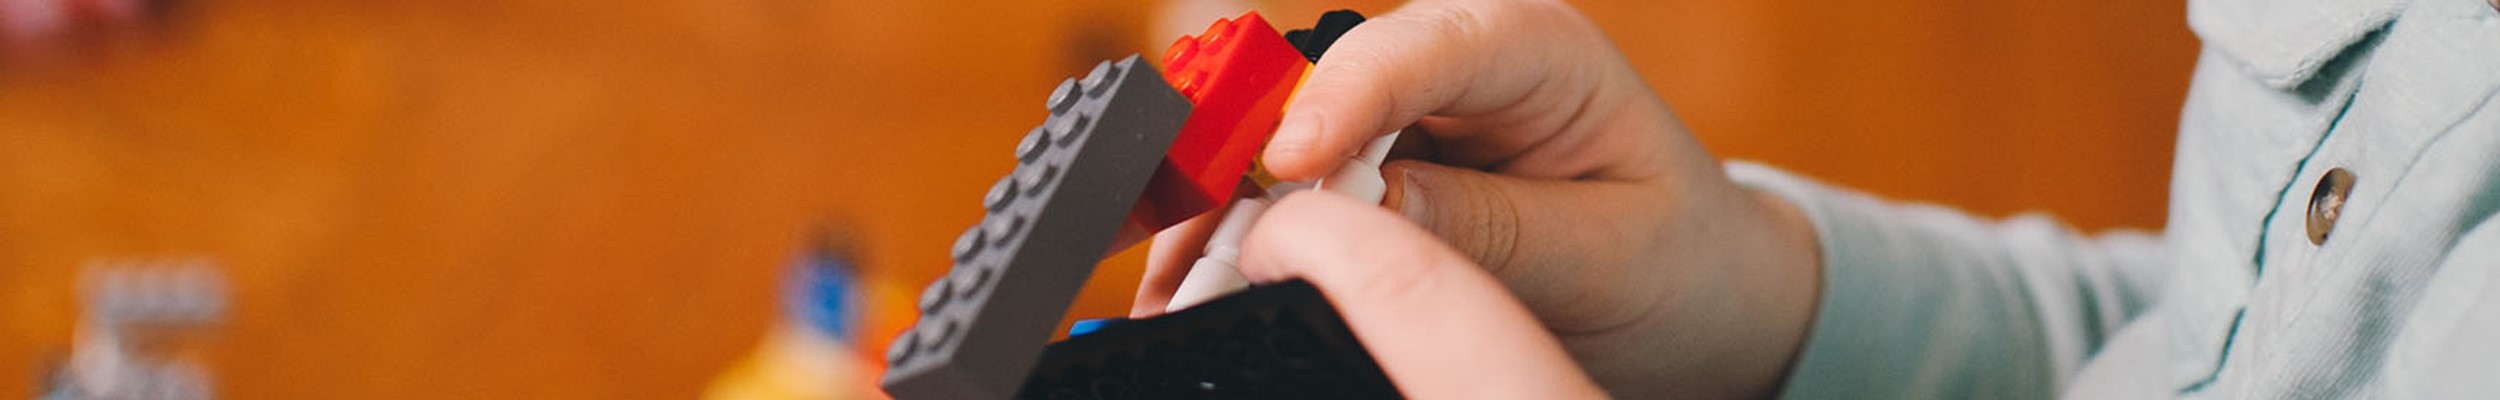 Child building lego spaceship